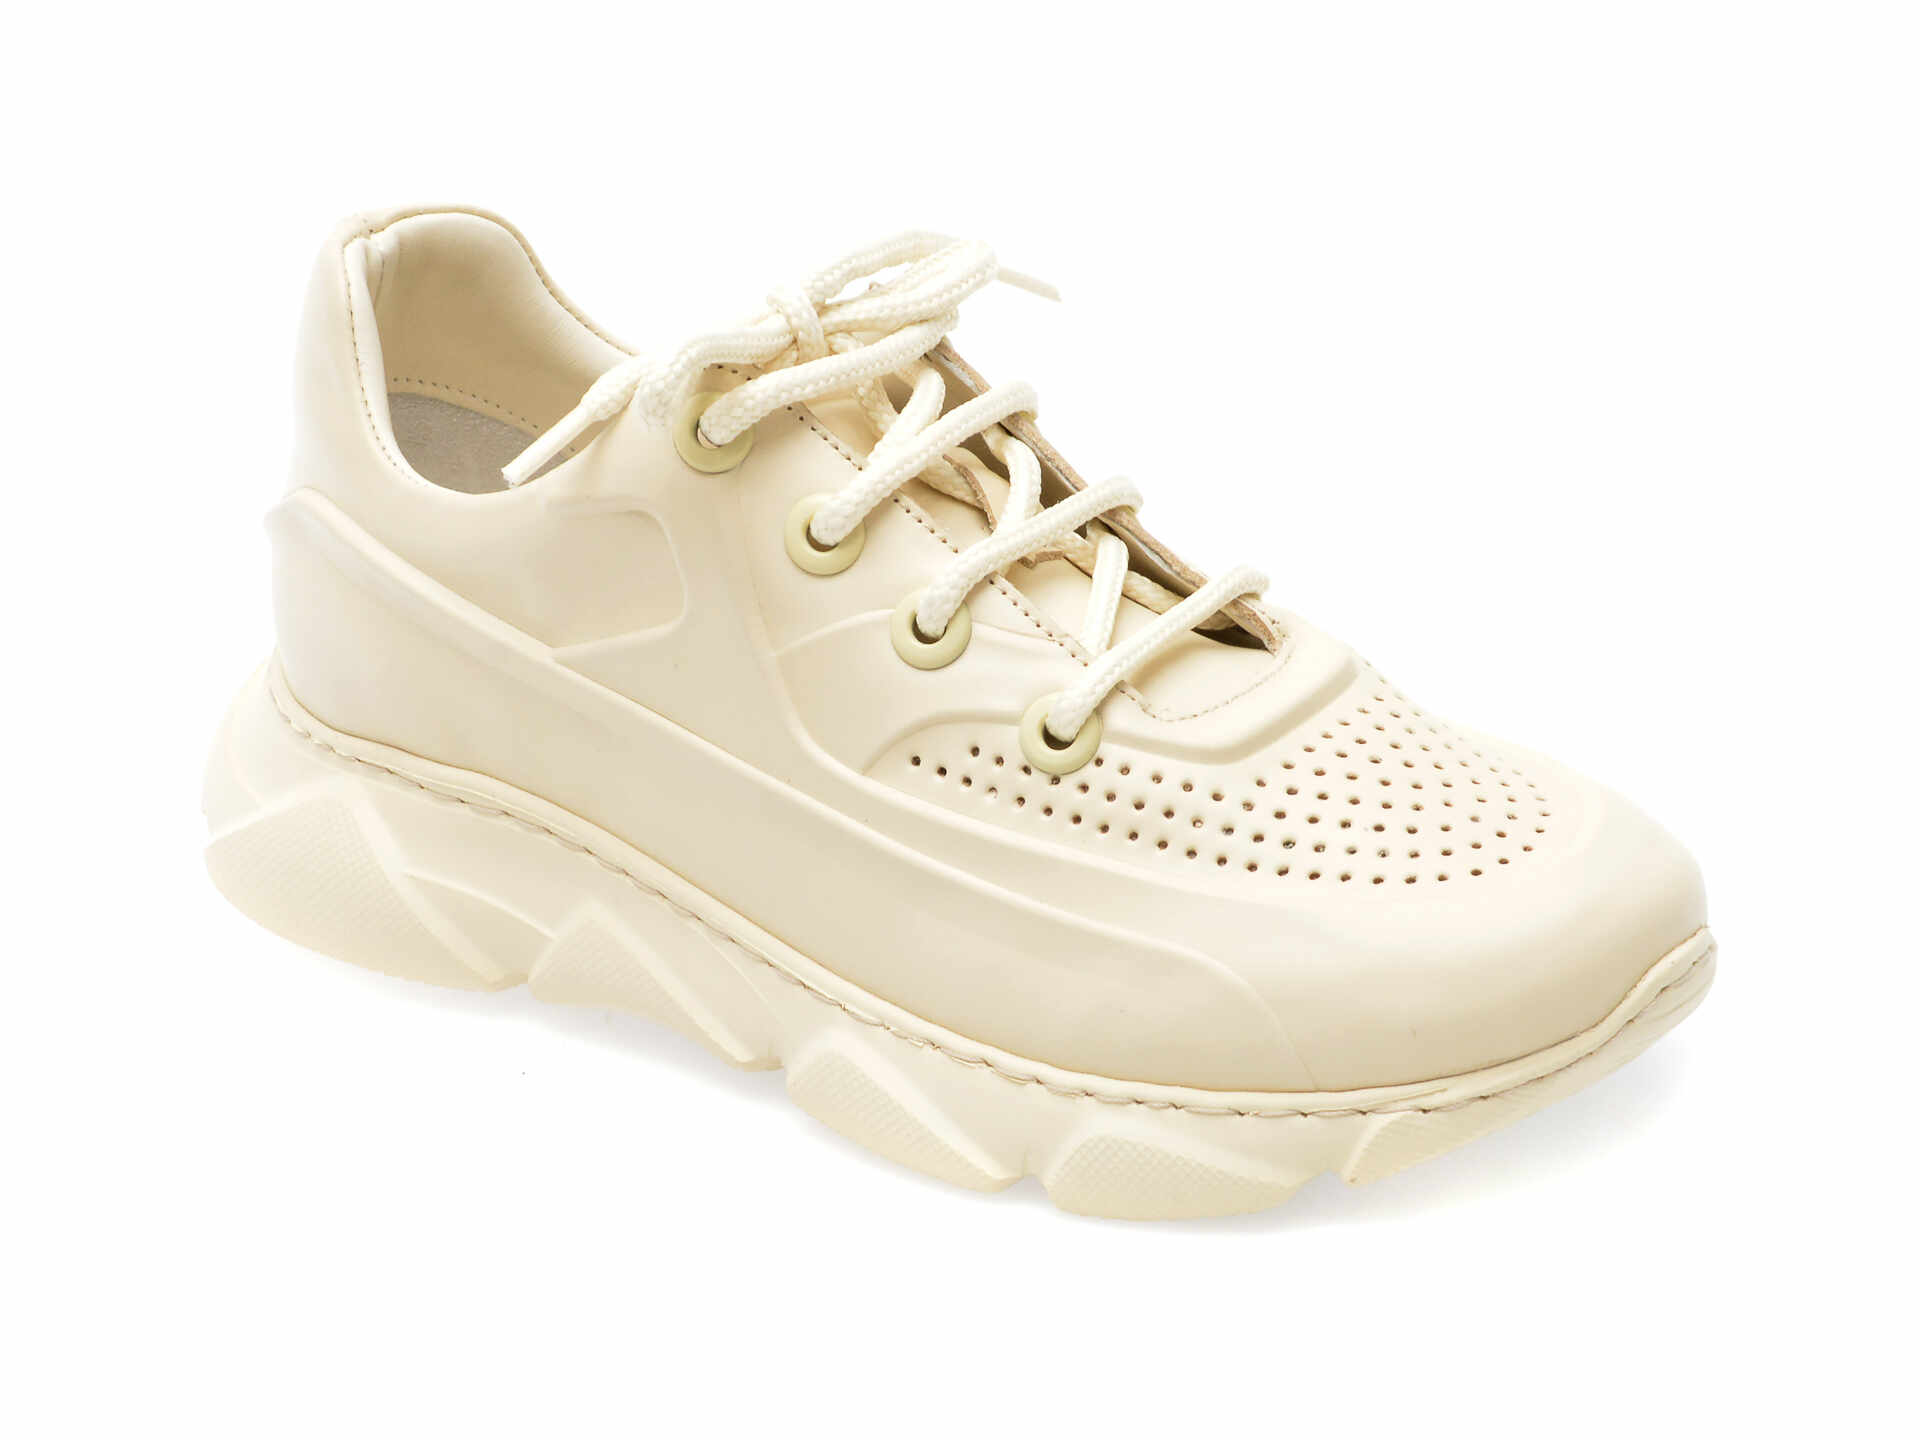 Pantofi GRYXX albi, 4921036, din piele naturala